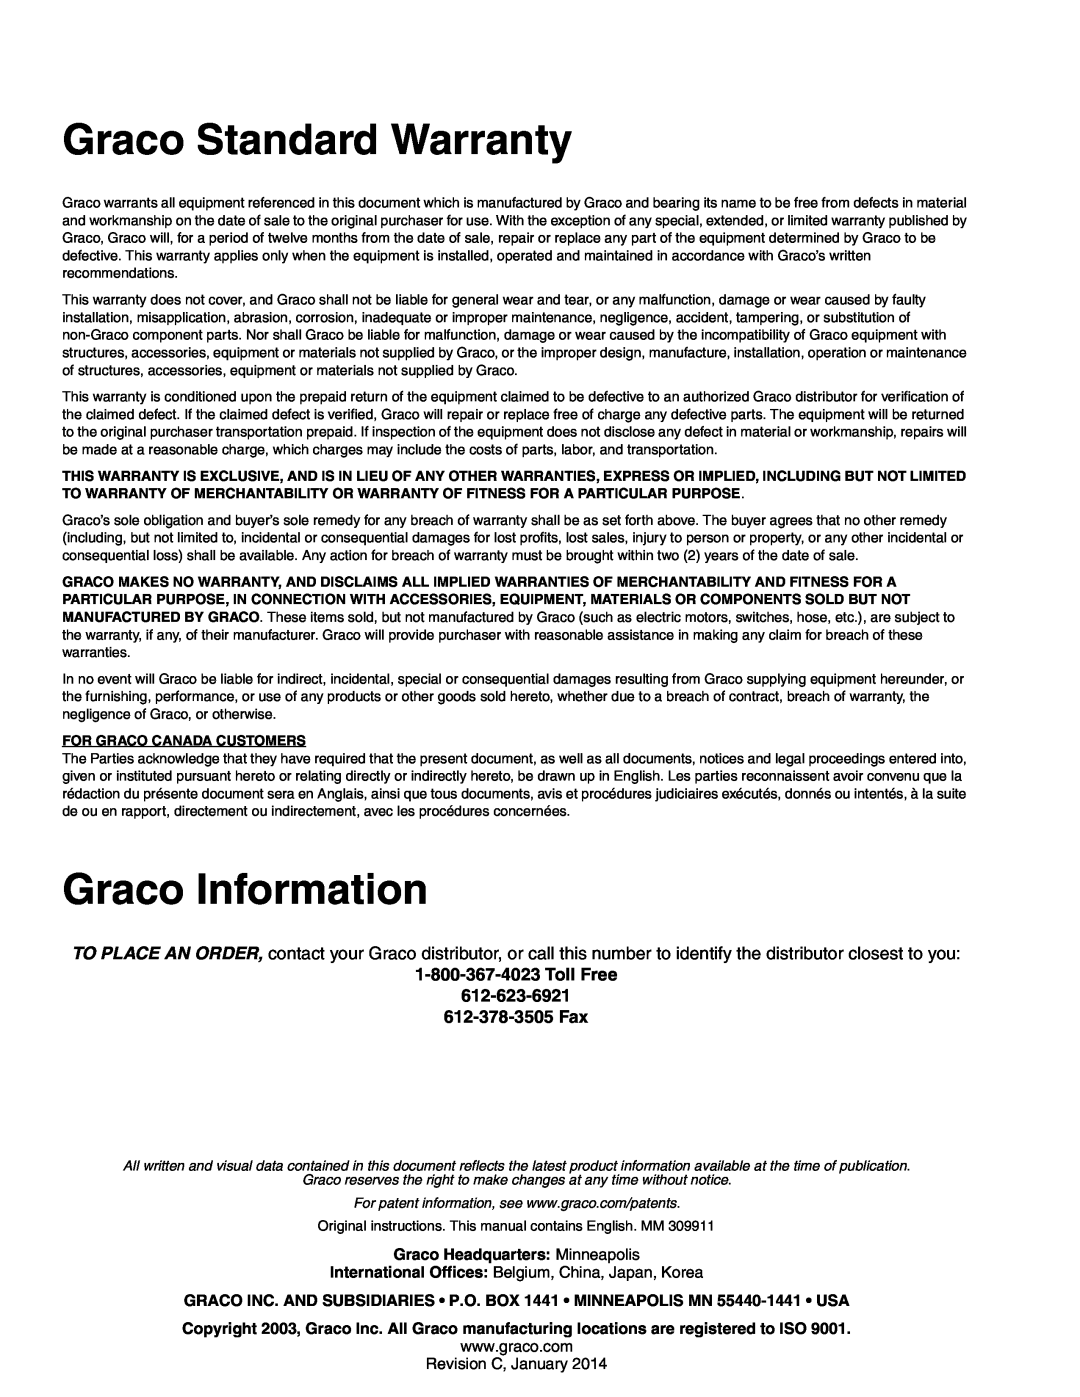 Graco 309911C manual Graco Standard Warranty, Graco Information 